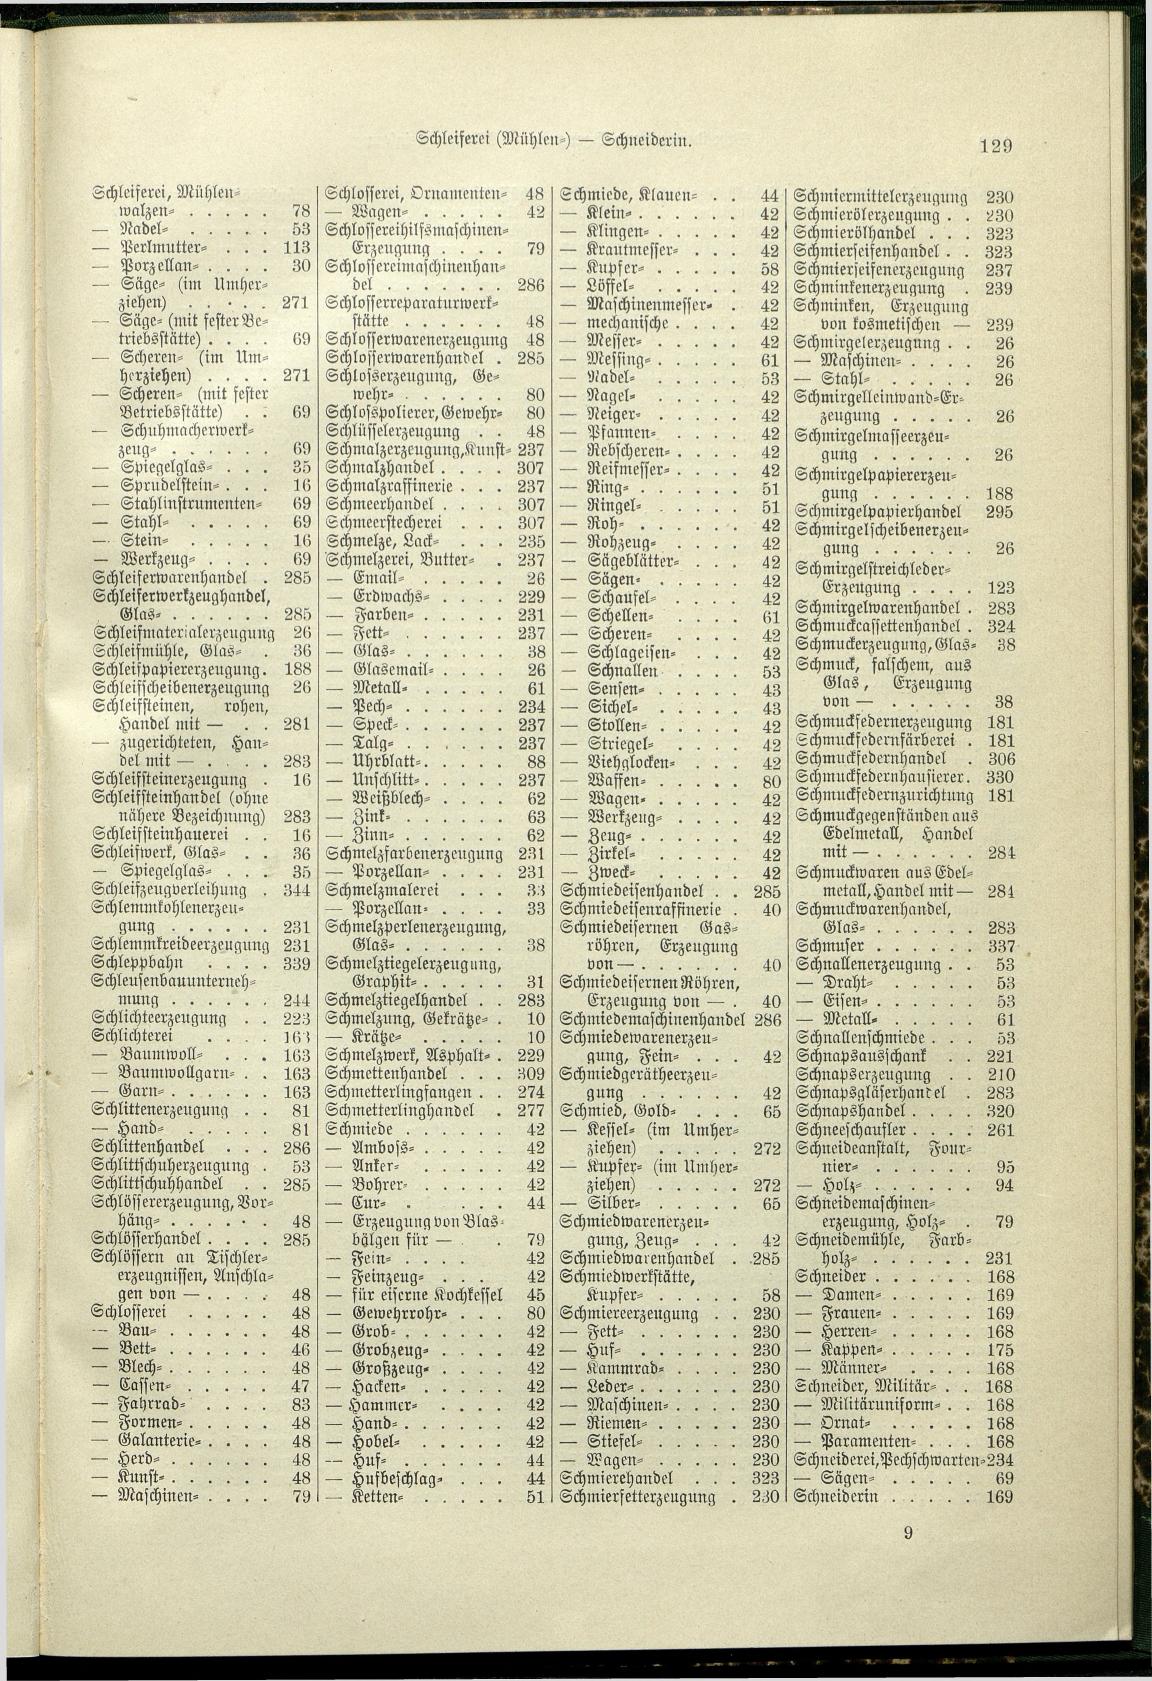 Verzeichnis der Gewerbe der im Reichsrathe vertretenen Königreiche und Länder 1900 - Page 133